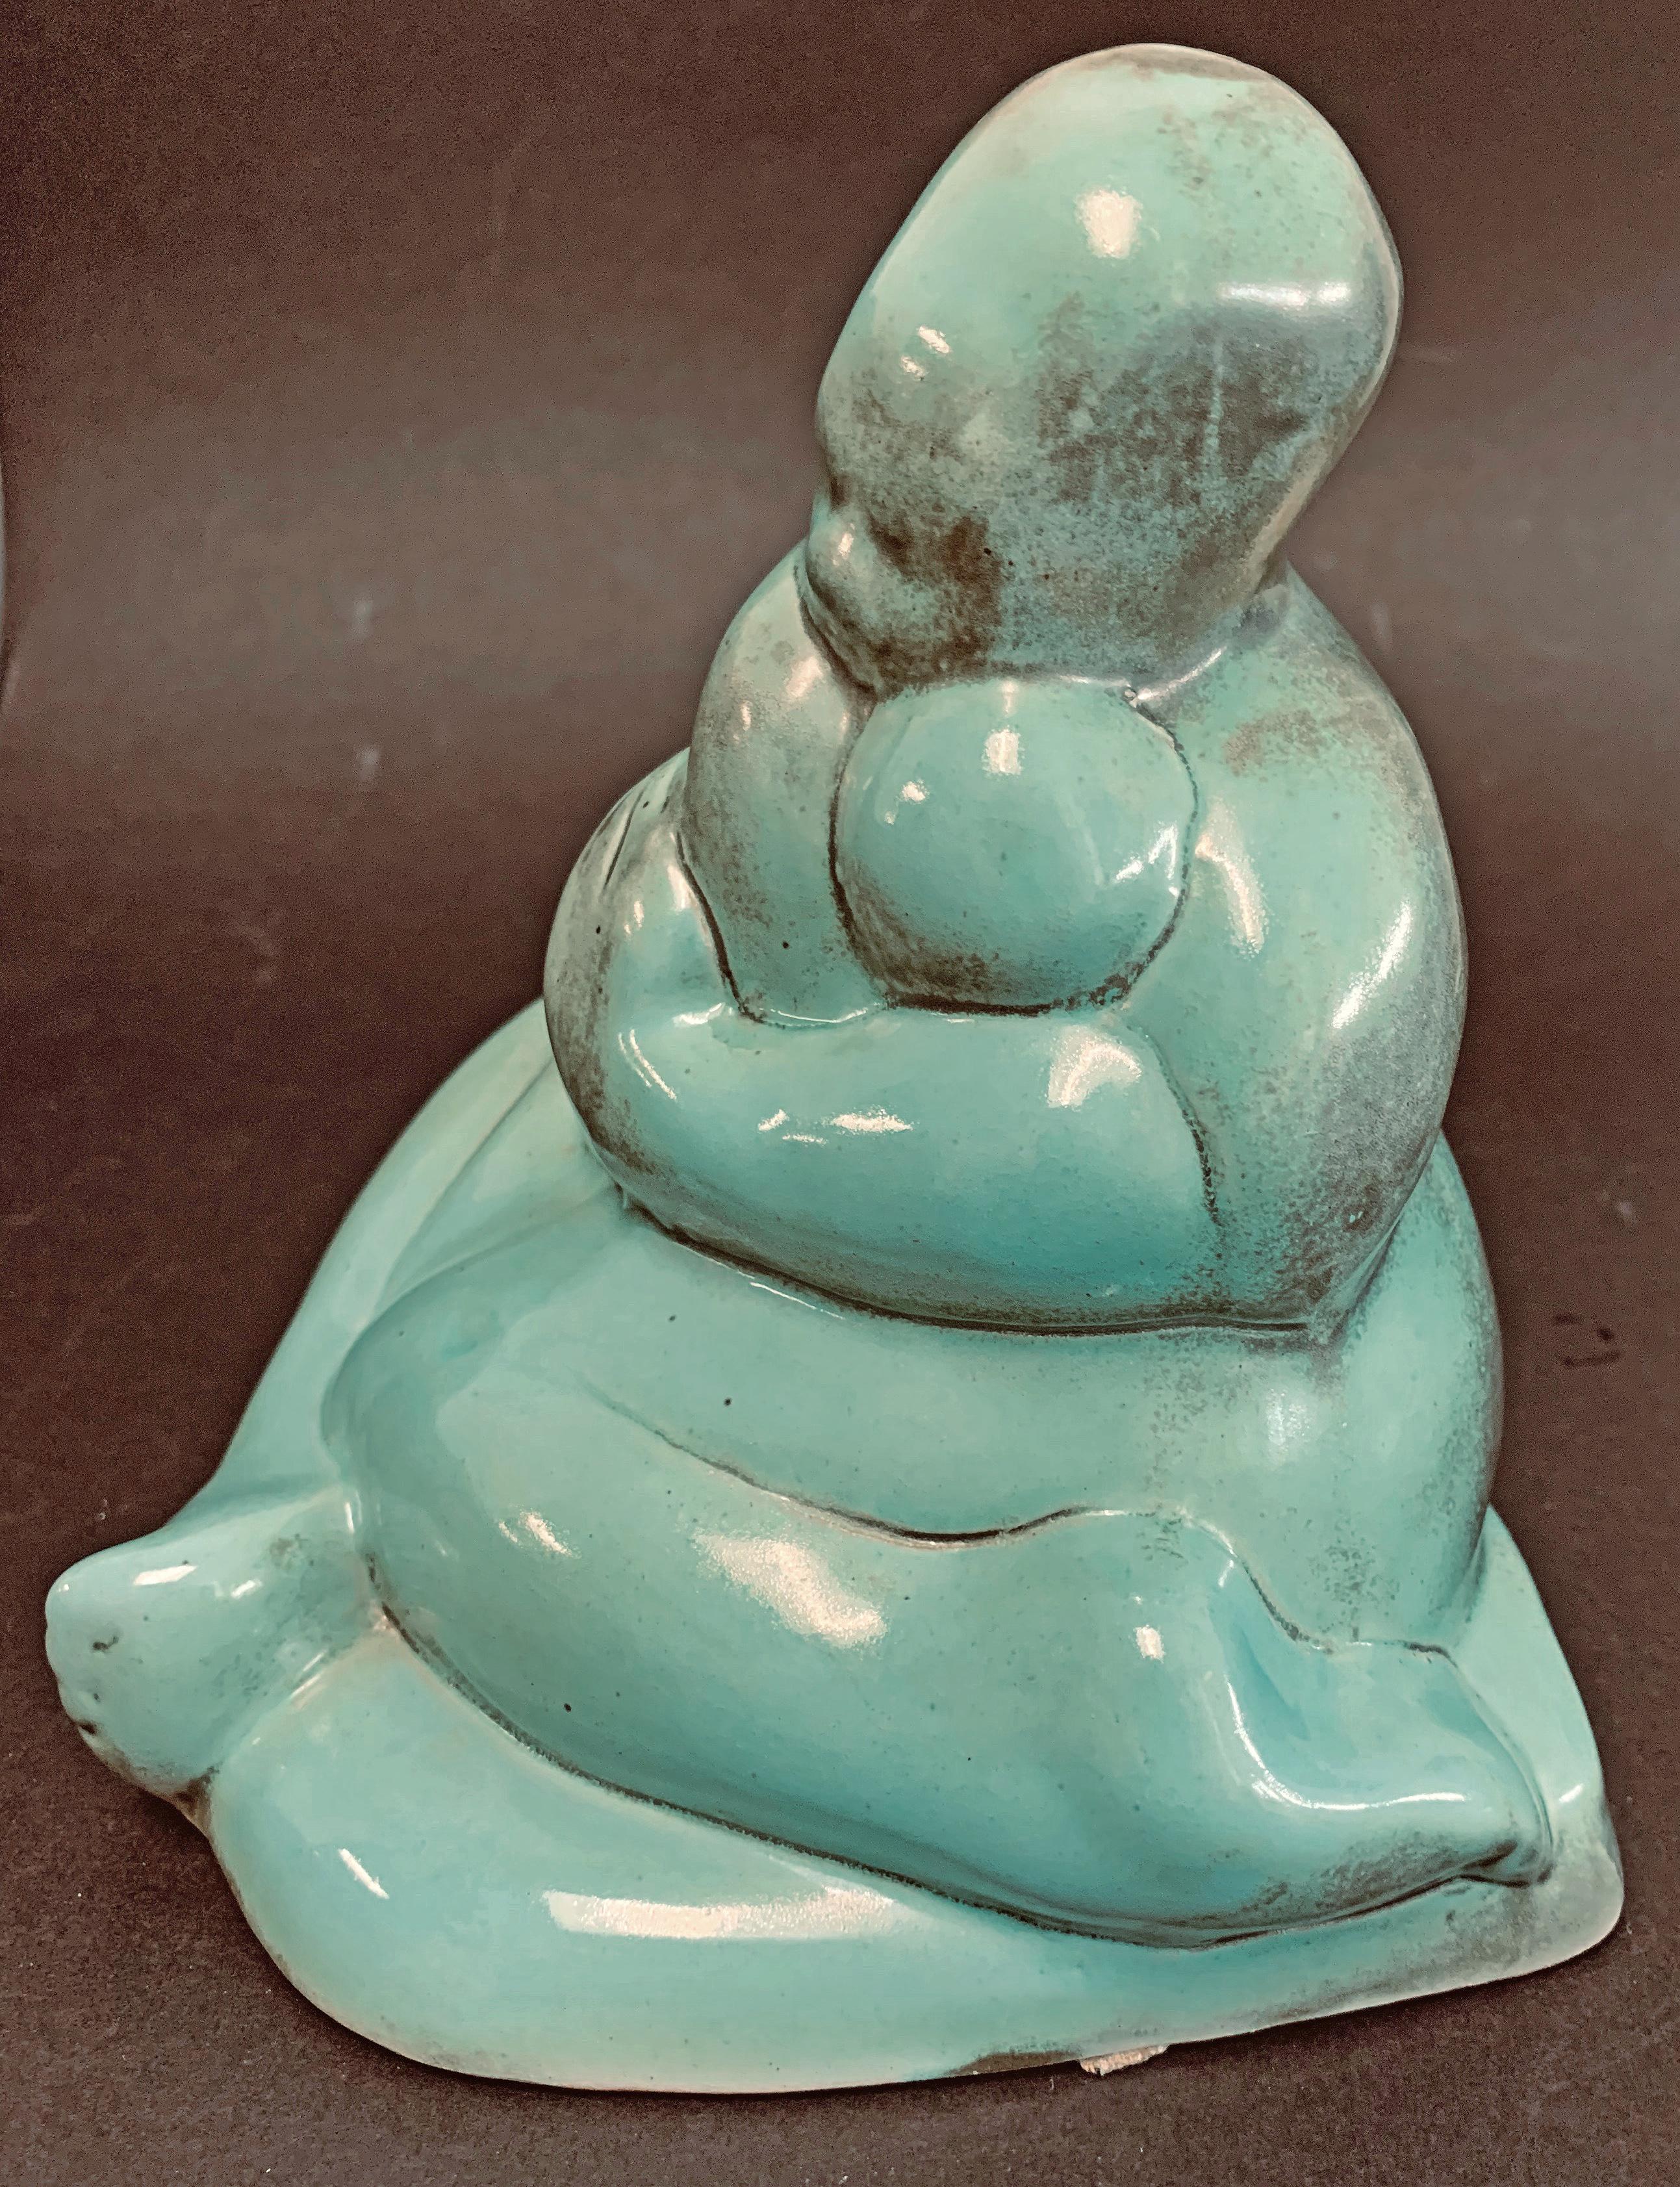 Diese stilisierte und reduzierte Keramikskulptur aus den 1930er Jahren zeigt eine sitzende Mutter, die ihr Kind ganz nah bei sich hat, die Beine gekreuzt und die Arme um das Kind gelegt. Die warme türkise Farbe wird durch Bereiche mit